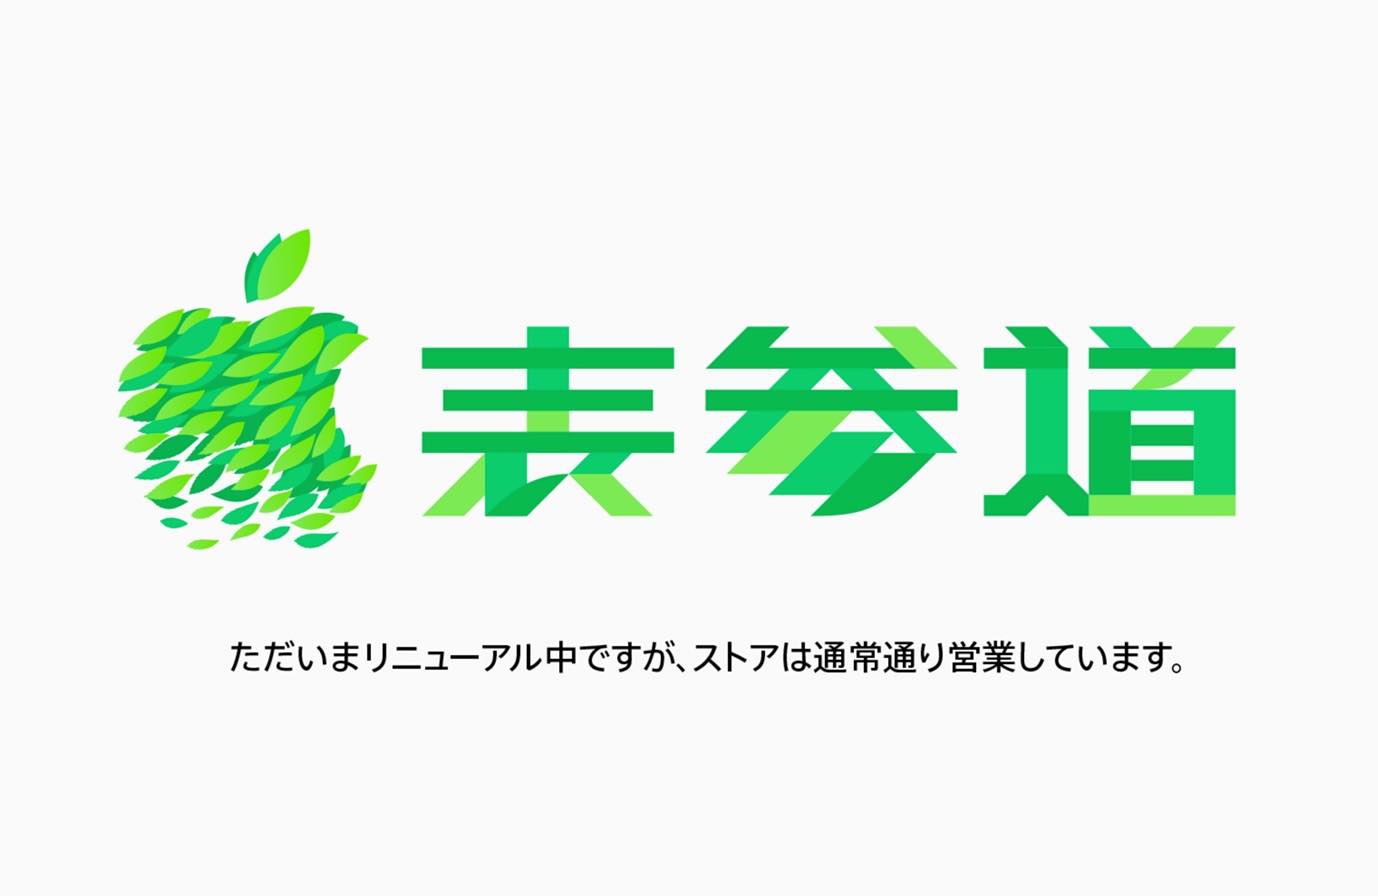 Apple Japan、年内にオープン予定の新しい2つのApple Storeのティザー画像を公開